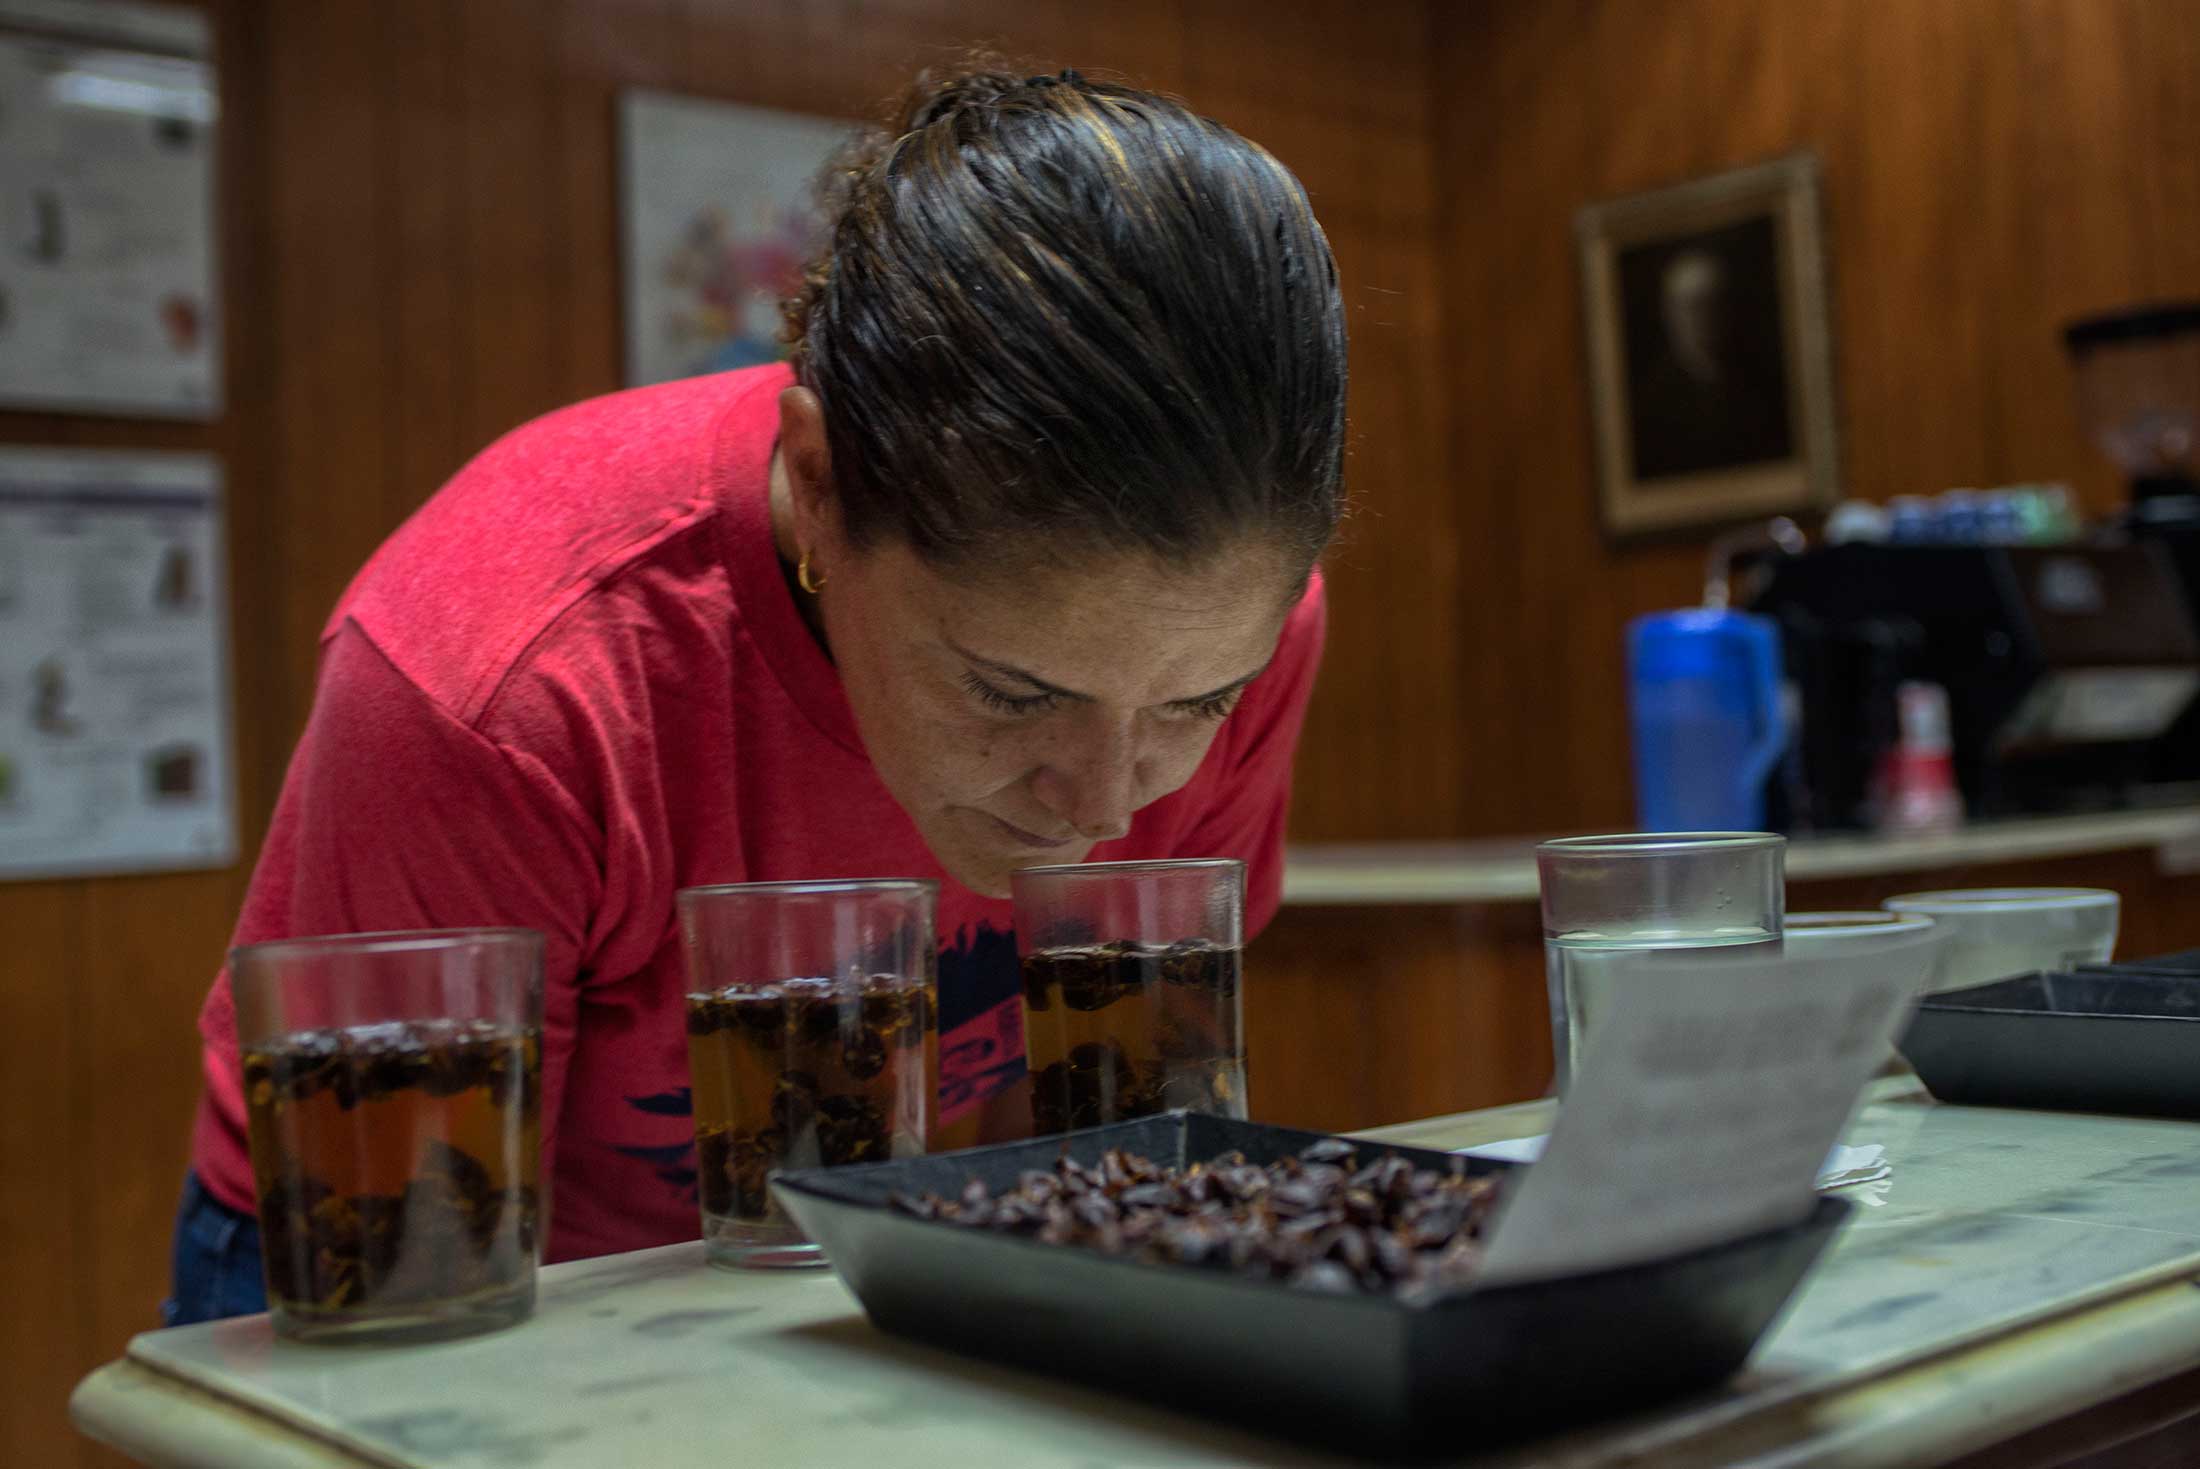 Aida Batlle performing a quality tasting of a cascara tea in&nbsp;Santa Ana, El Salvador.